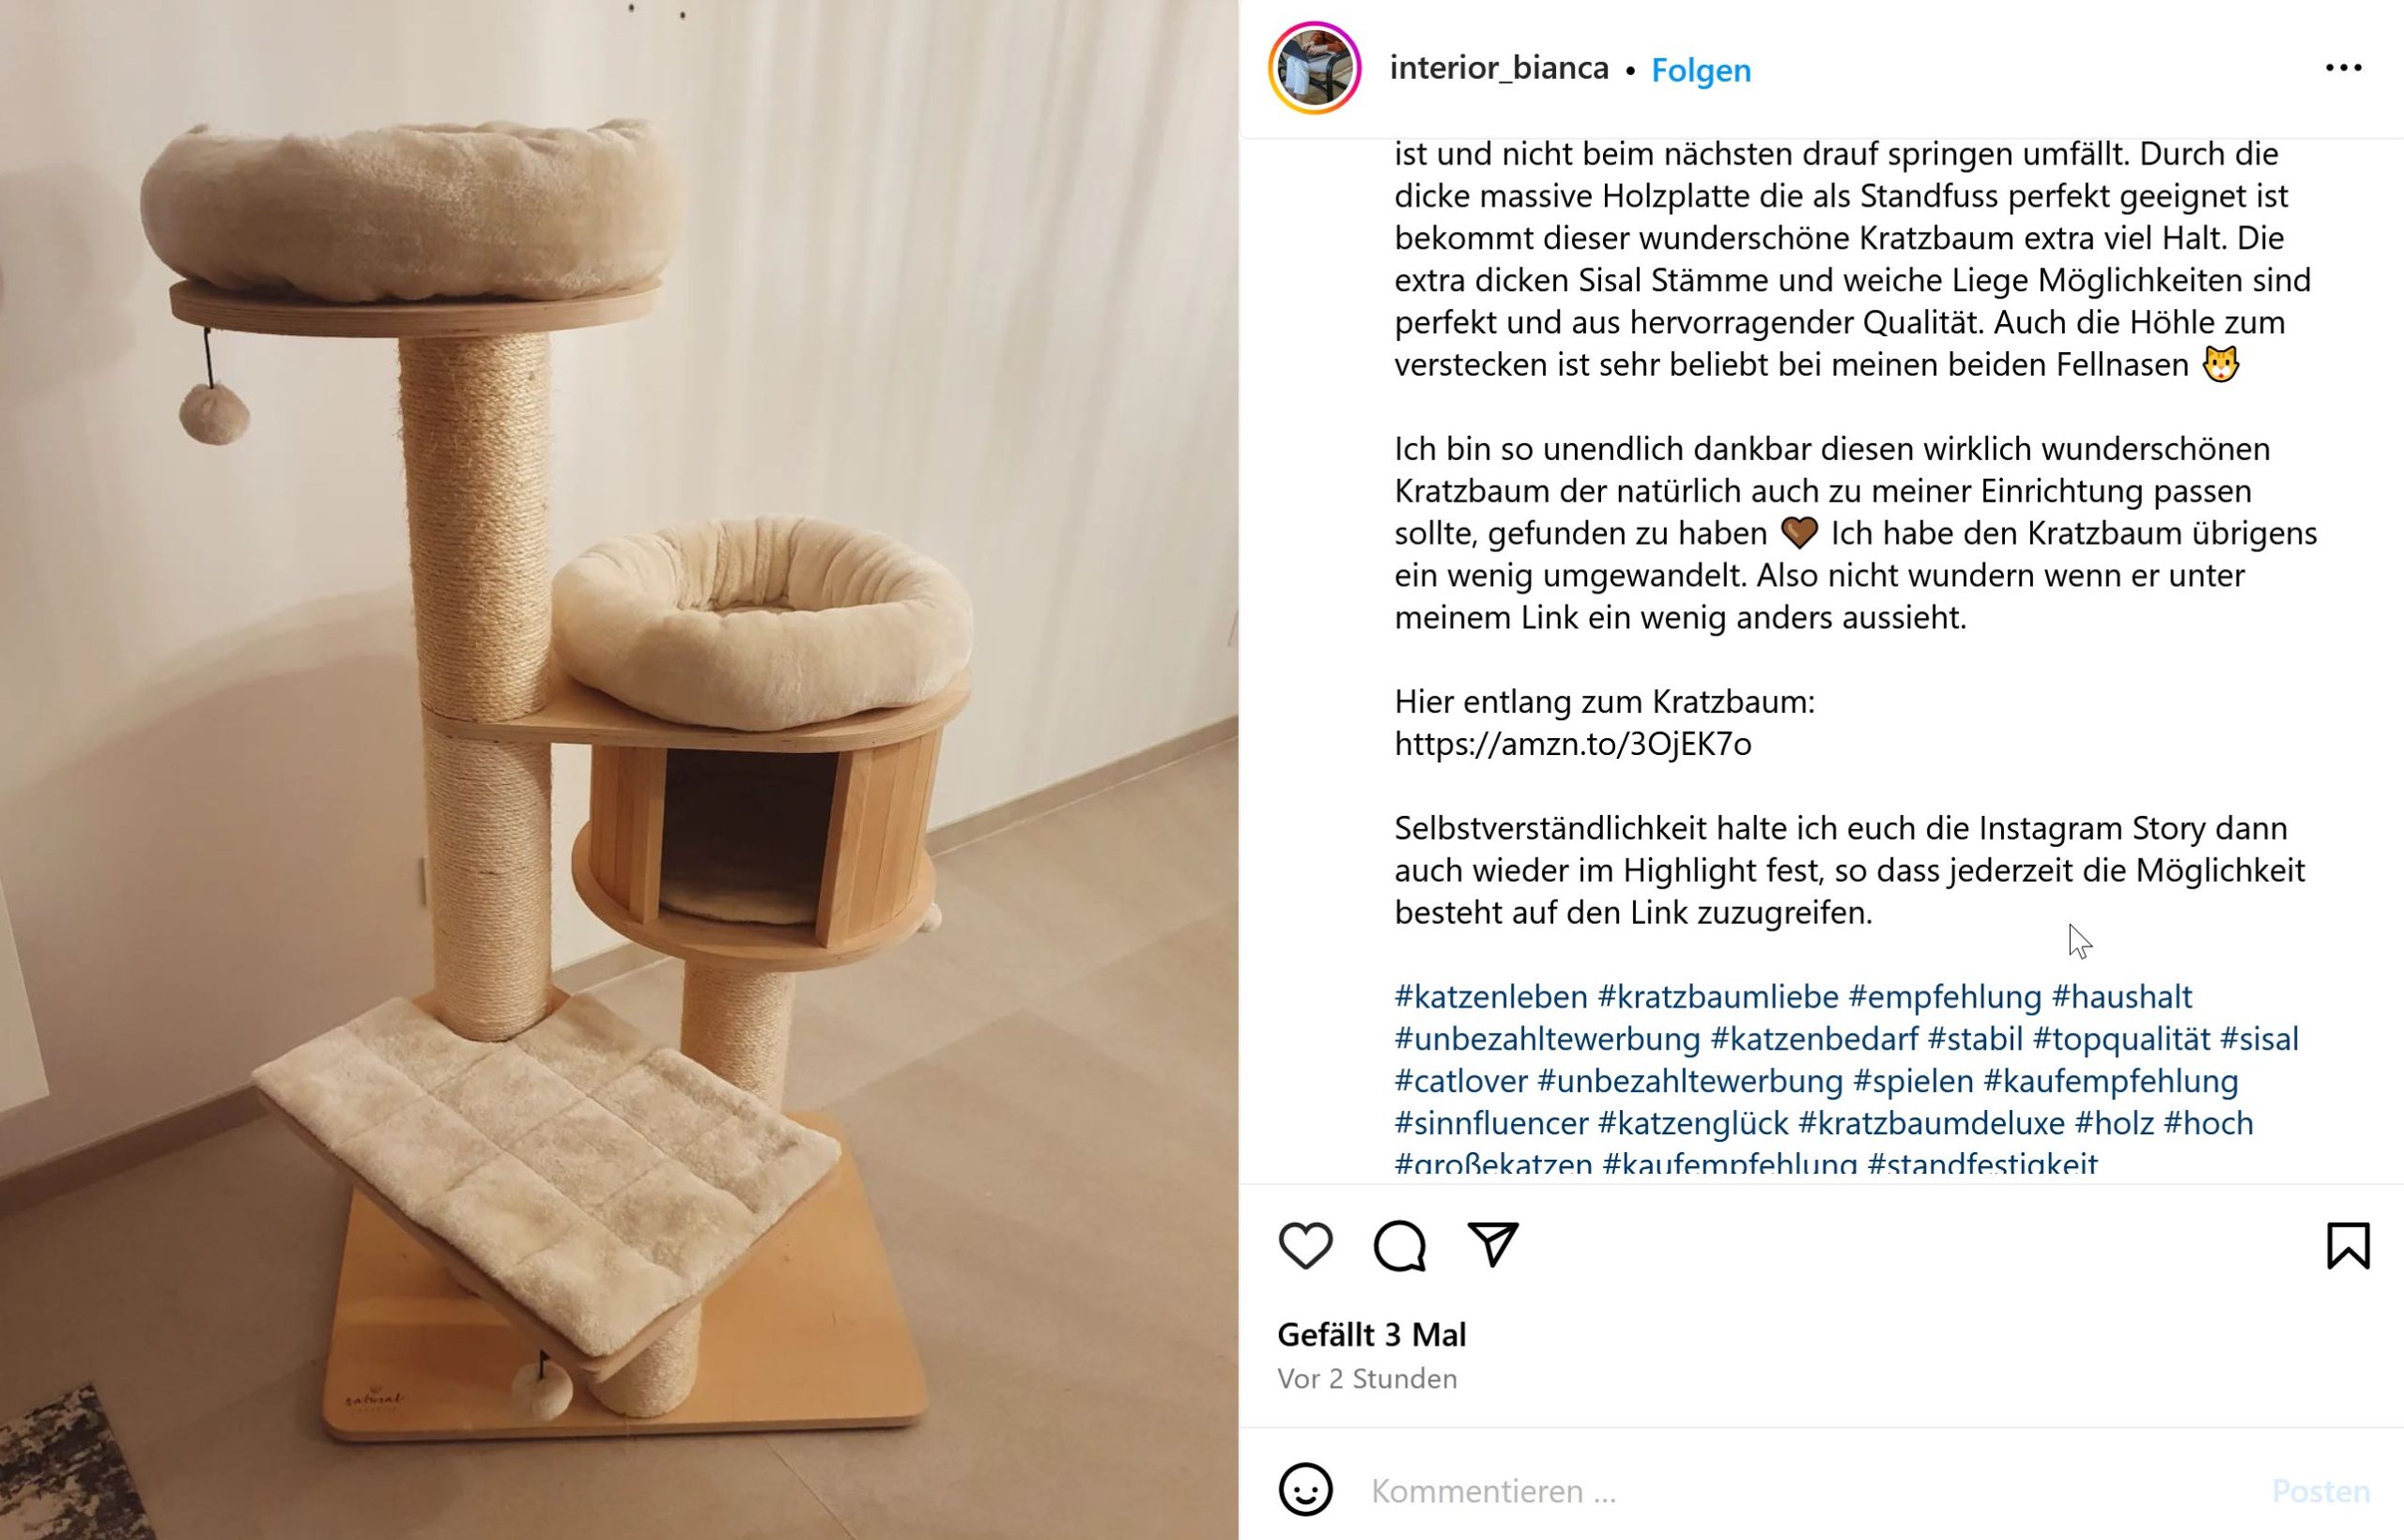 Katzen Kratzbaum - Bianca Döhring Amazon Produkttest Betrug Abzocke